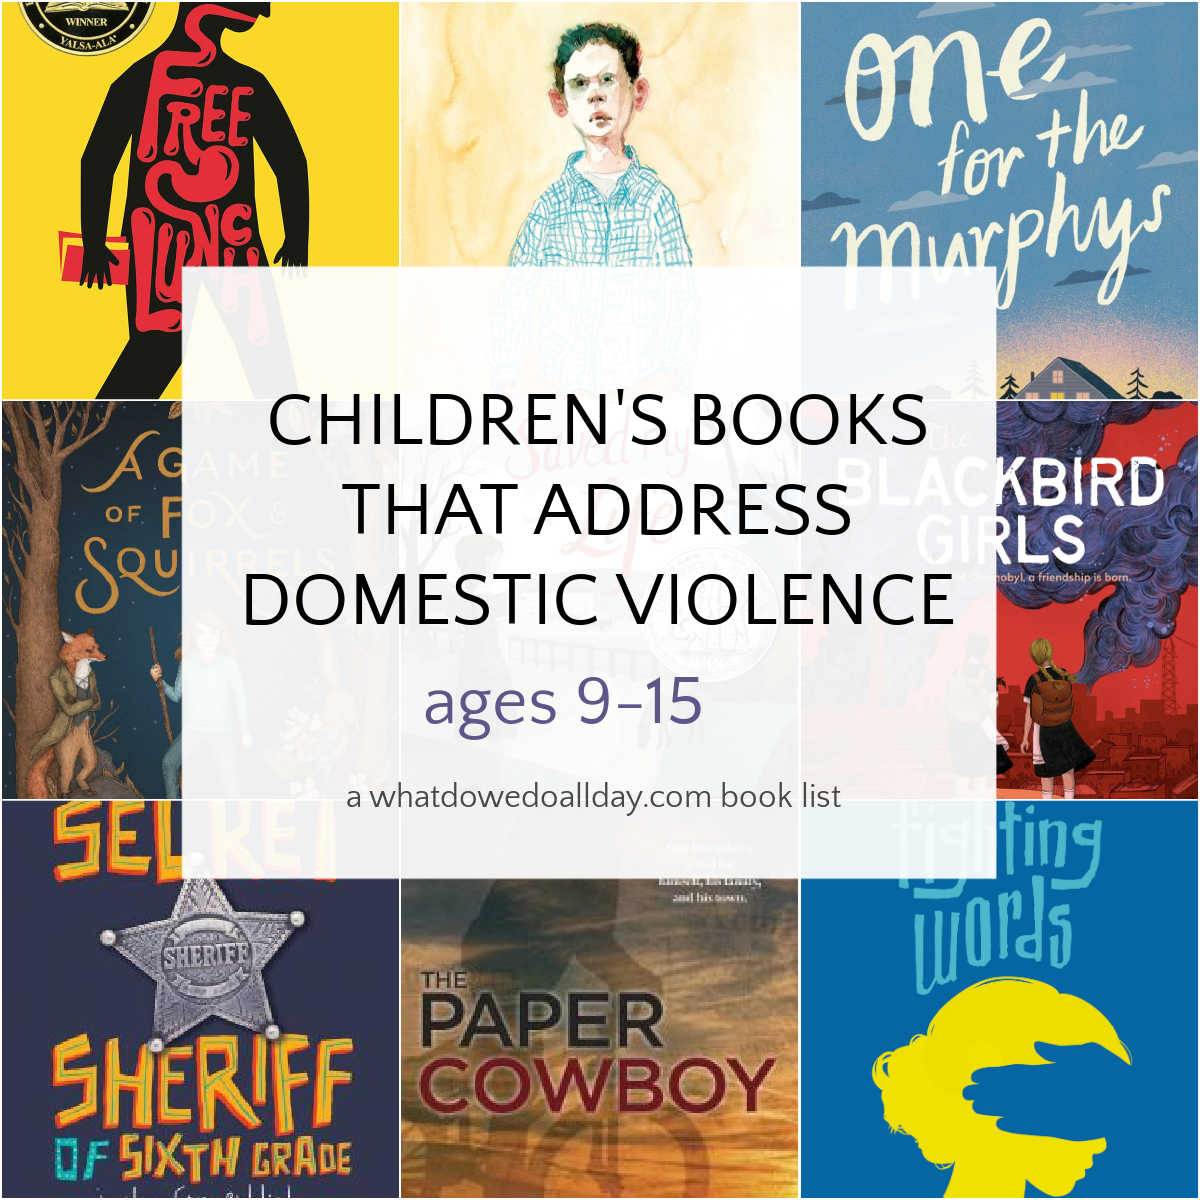 Libros infantiles sobre violencia doméstica.